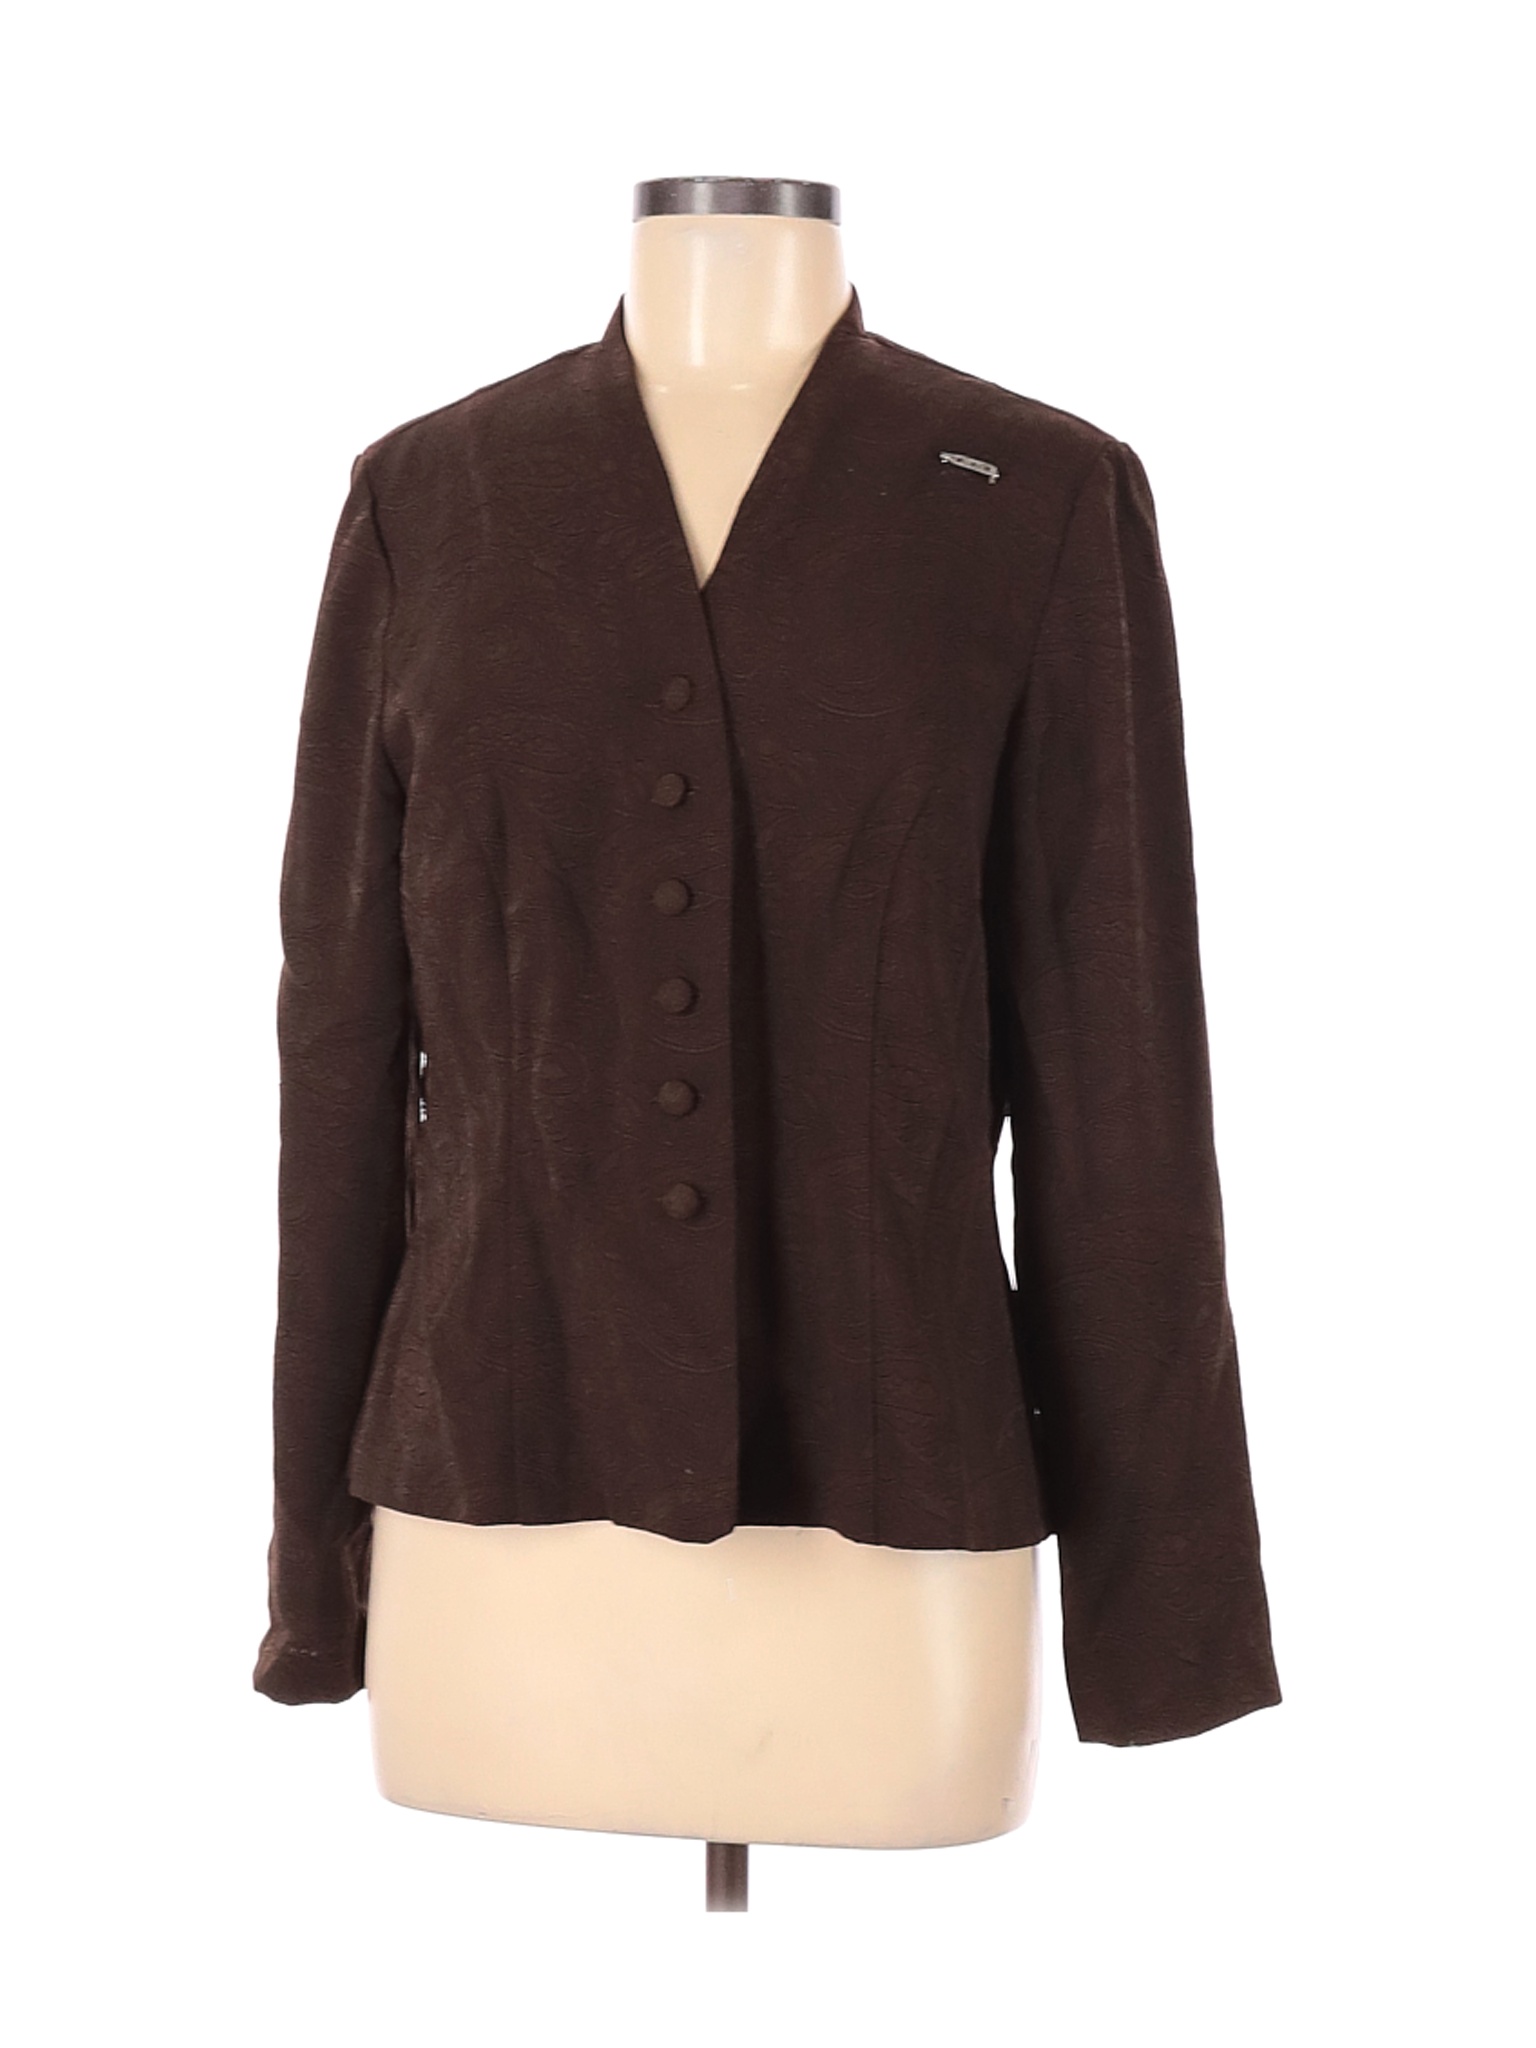 Miss Dorby Women Brown Jacket 12 | eBay